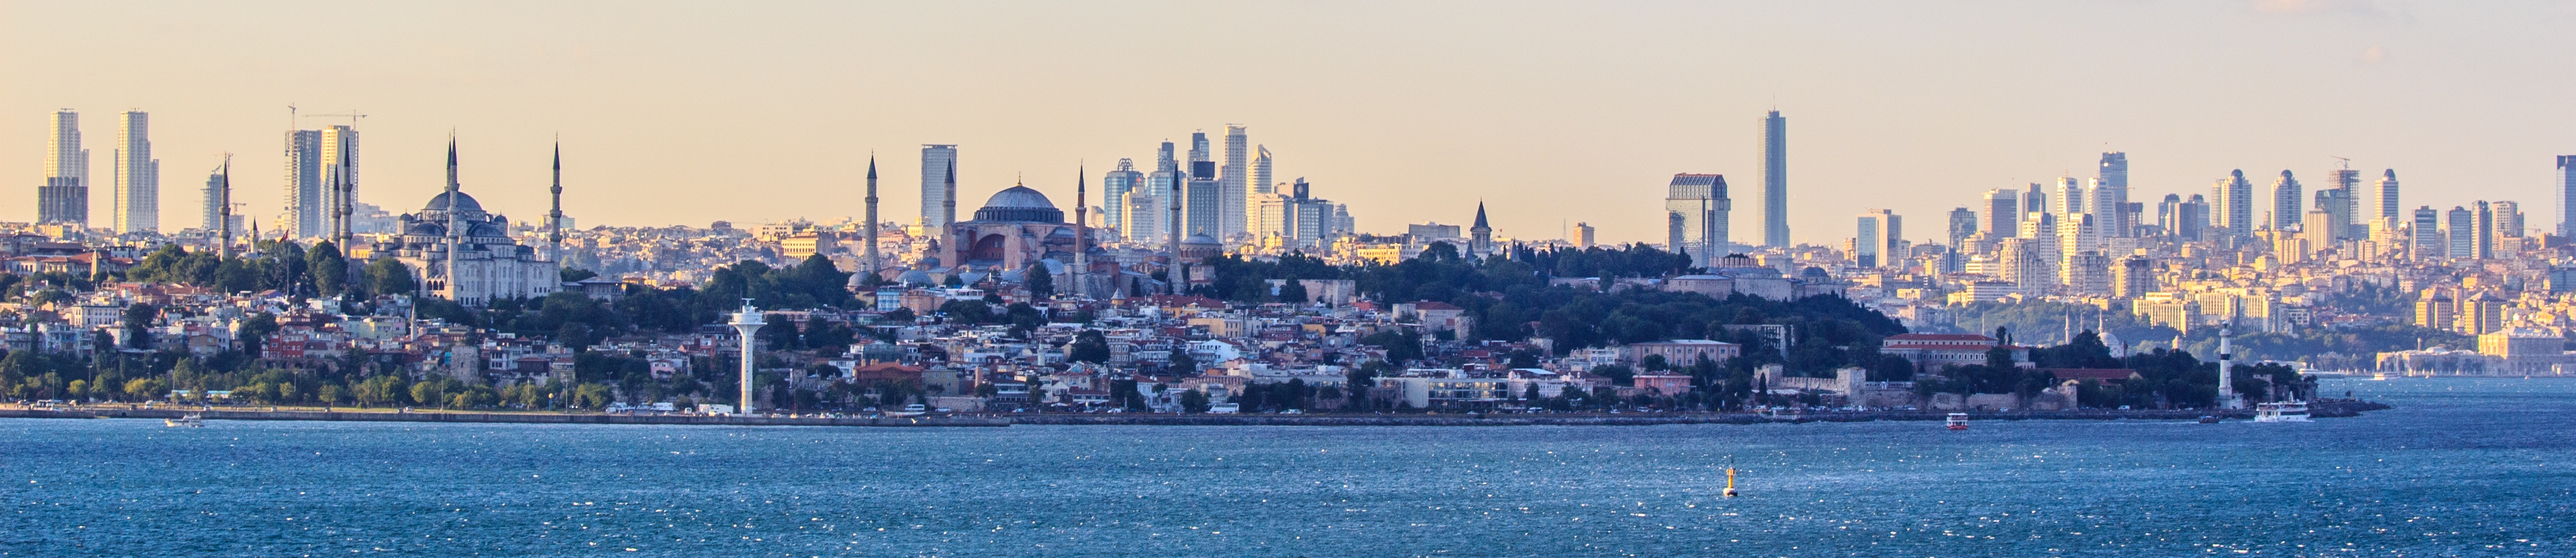 Стамбул по темпам развития на третьем месте в мире - hayatestate.com